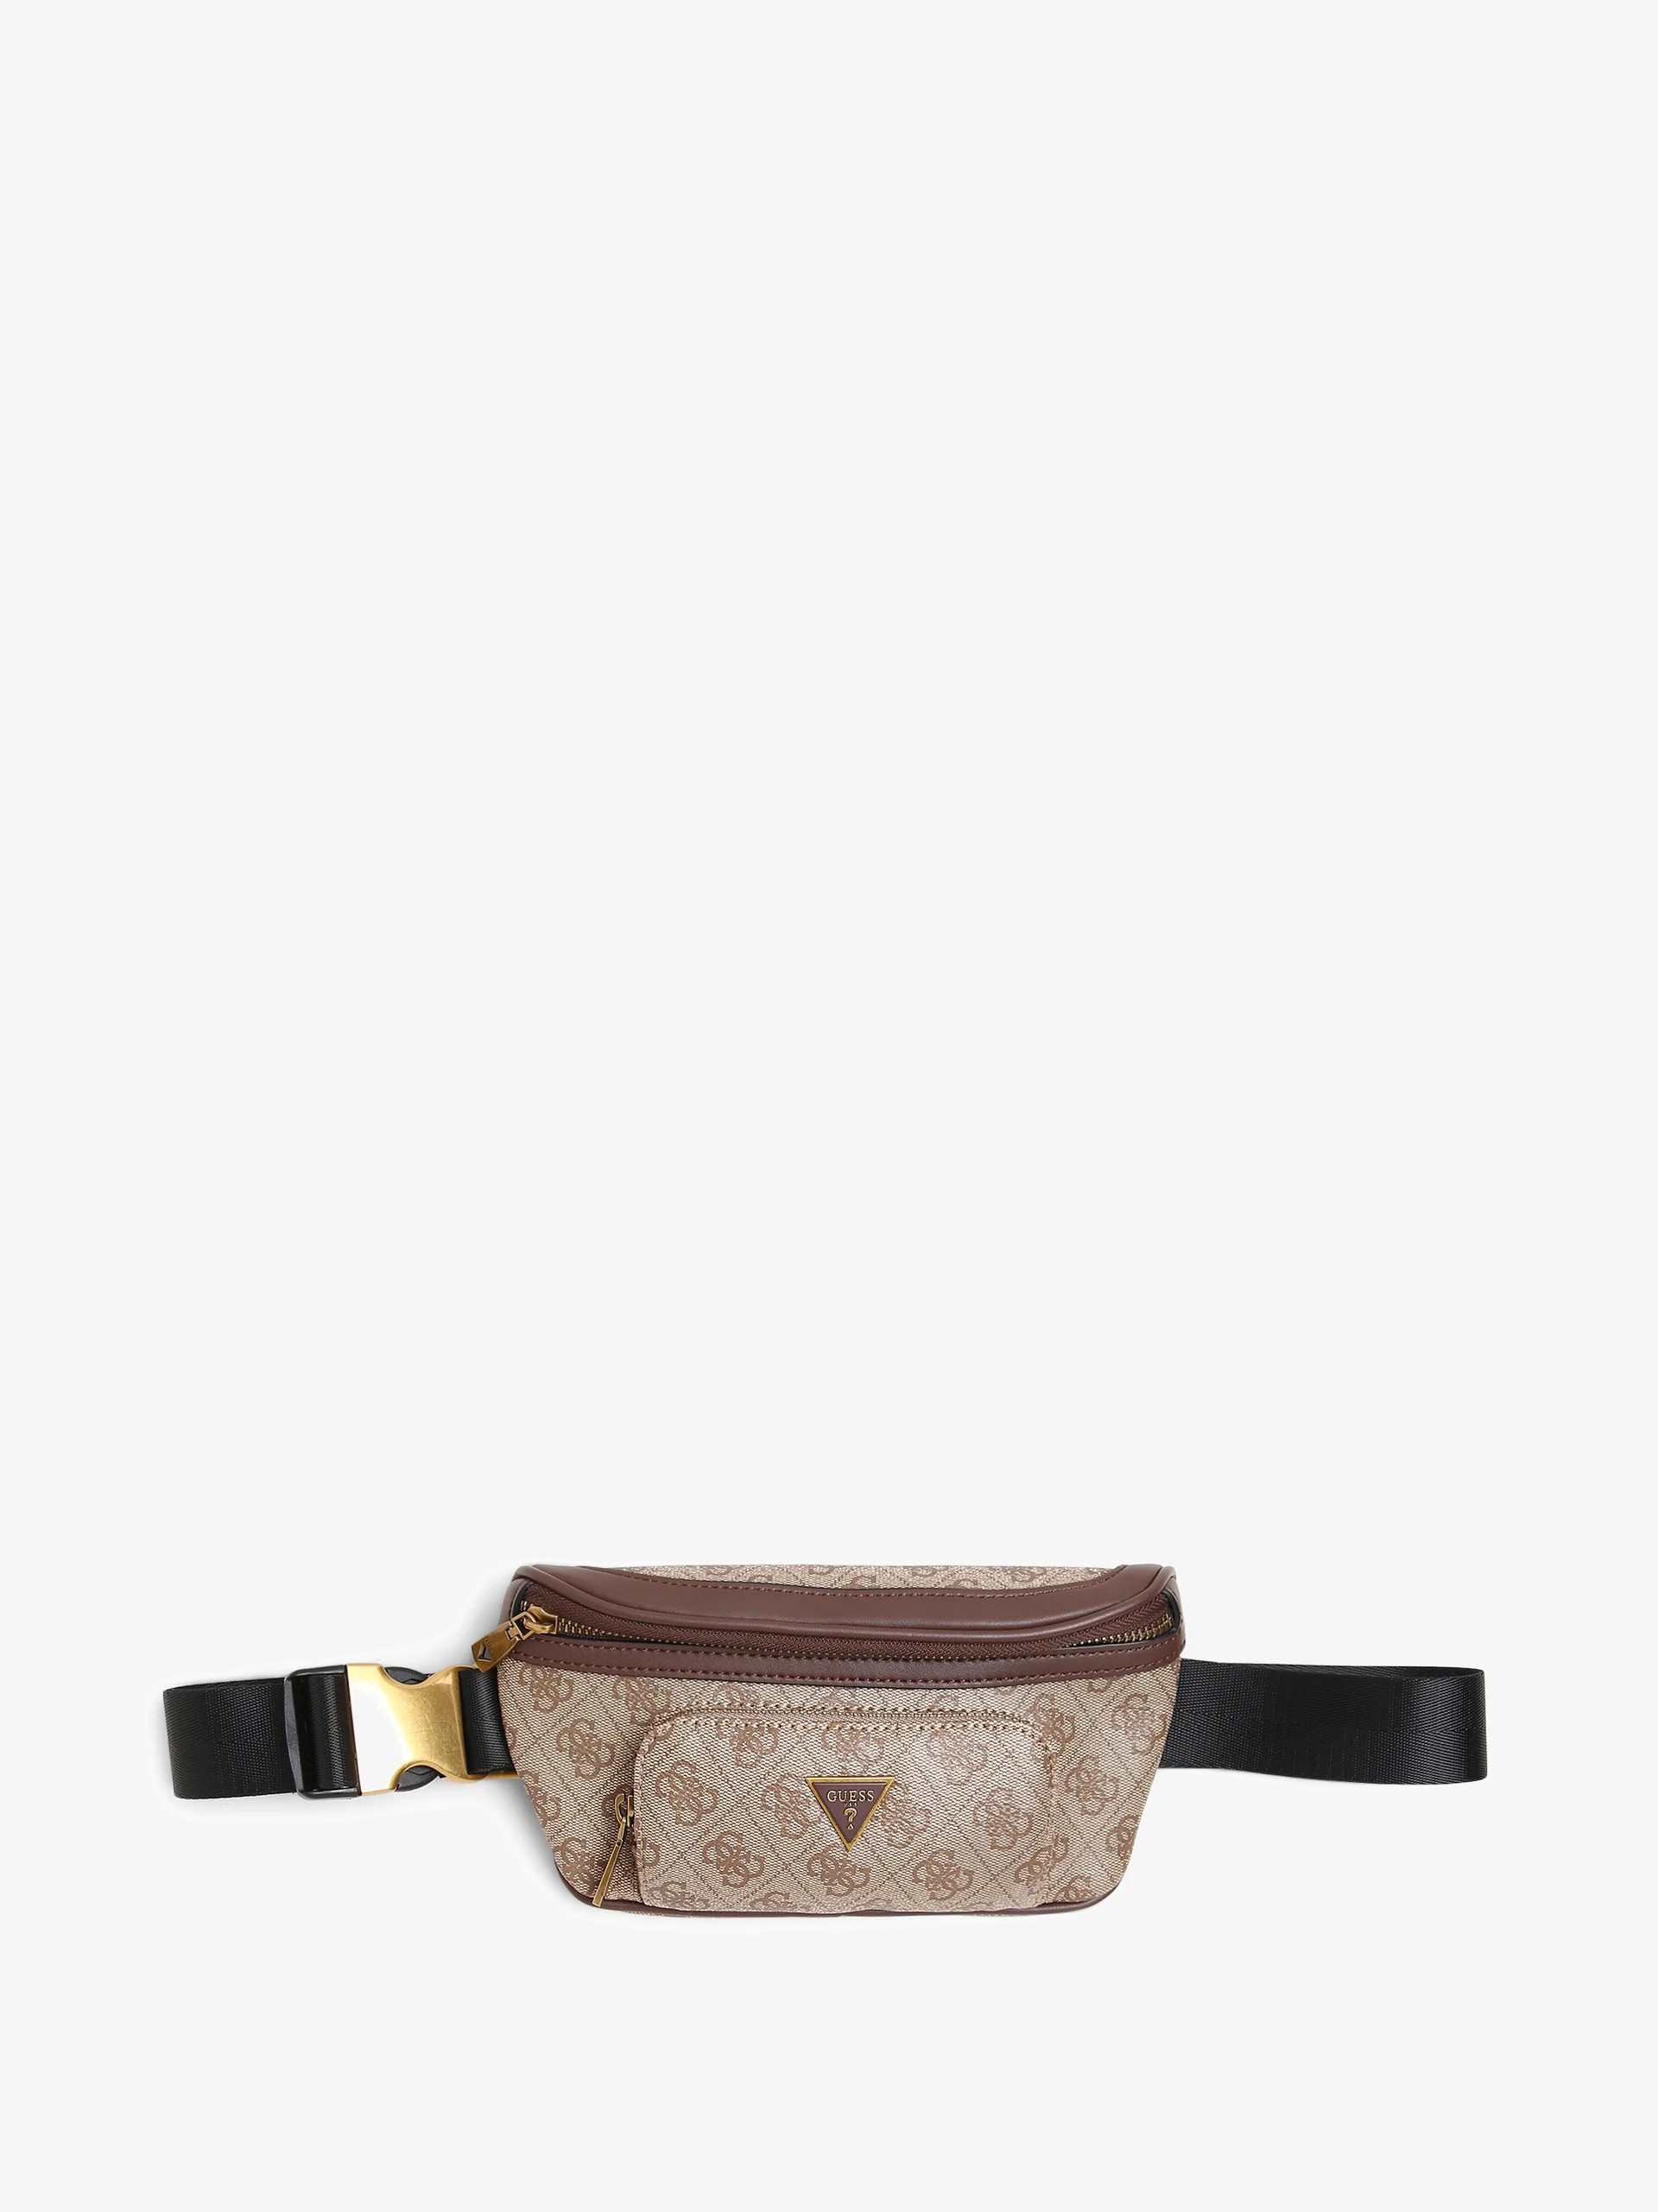 Поясная сумка Vezzola Smart Compact Bum Bag Unisex, бежевый/коричневый